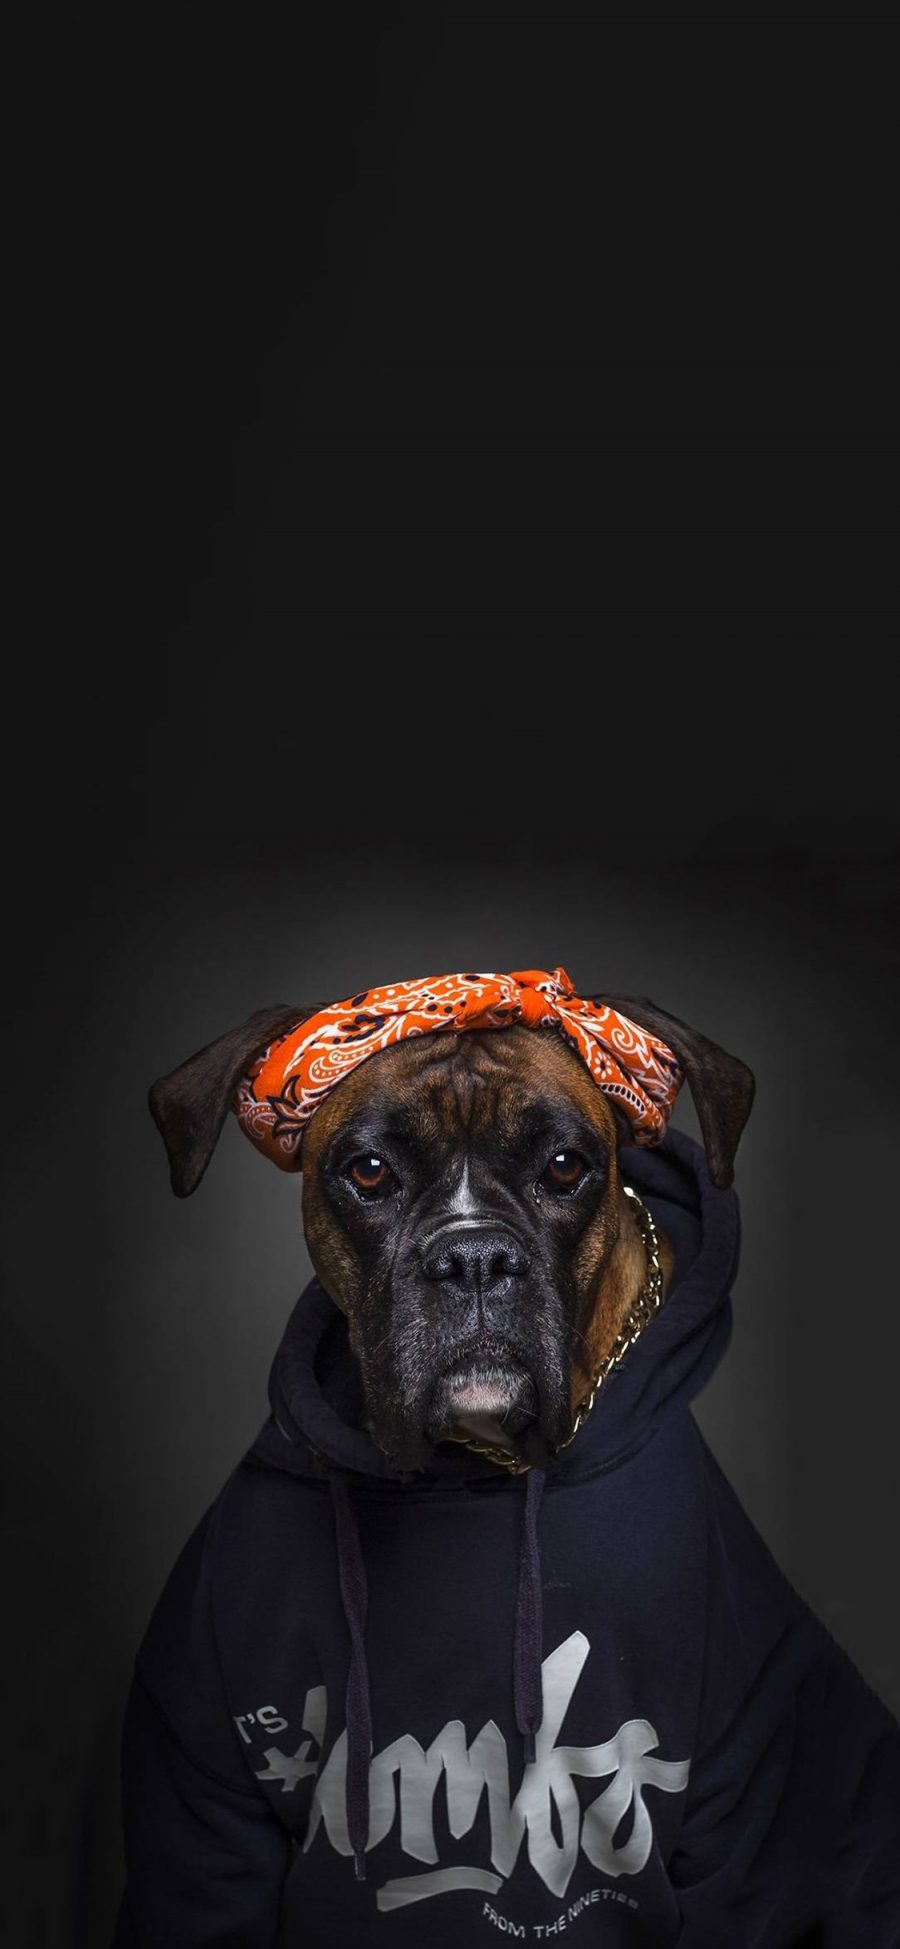 [2436×1125]宠物狗 写真 卫衣 头巾 滑稽 苹果手机壁纸图片